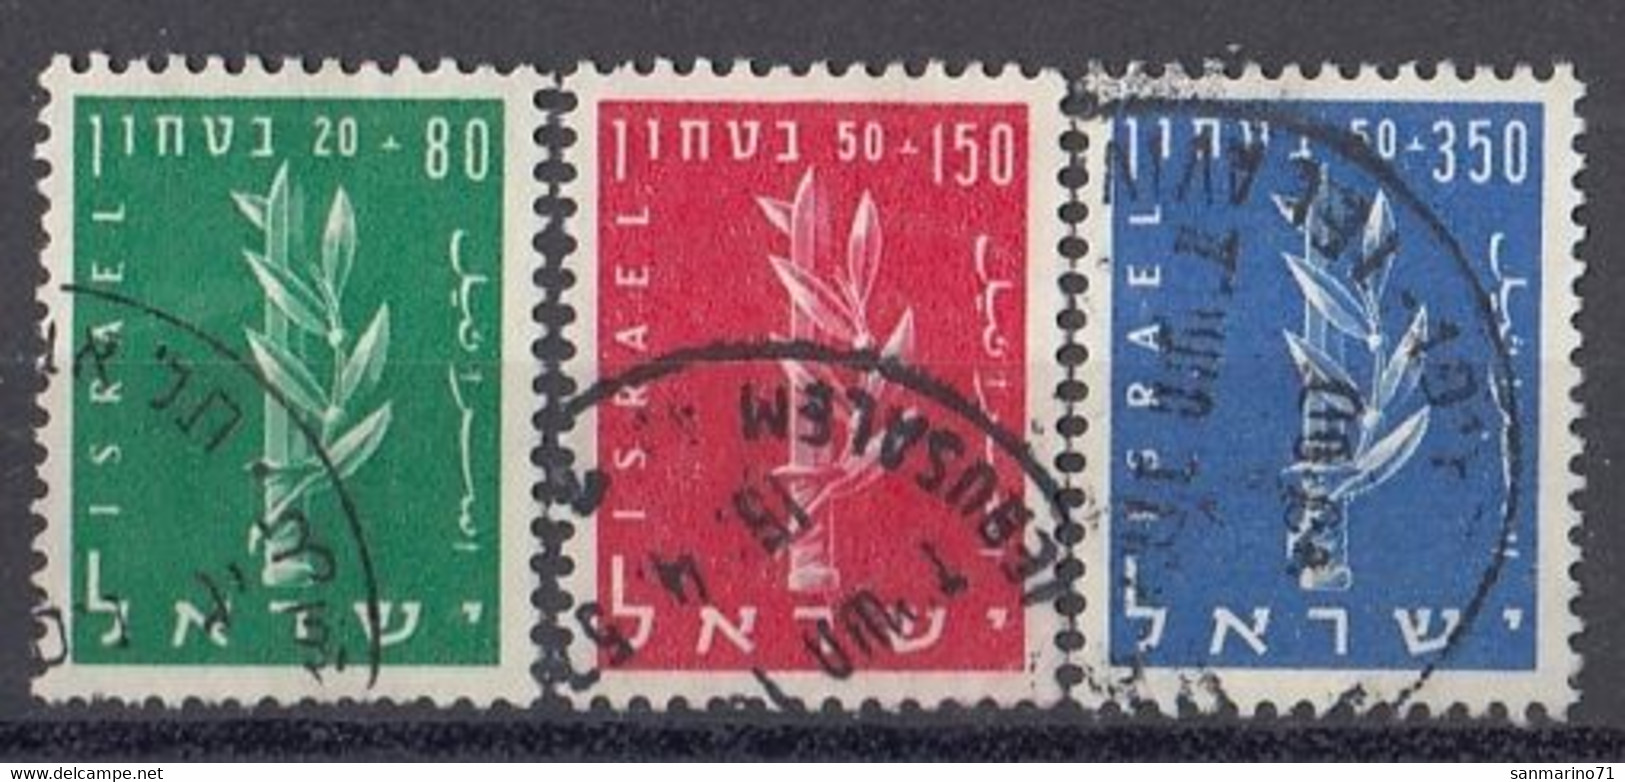 ISRAEL 140-142,used,falc Hinged - Usati (senza Tab)